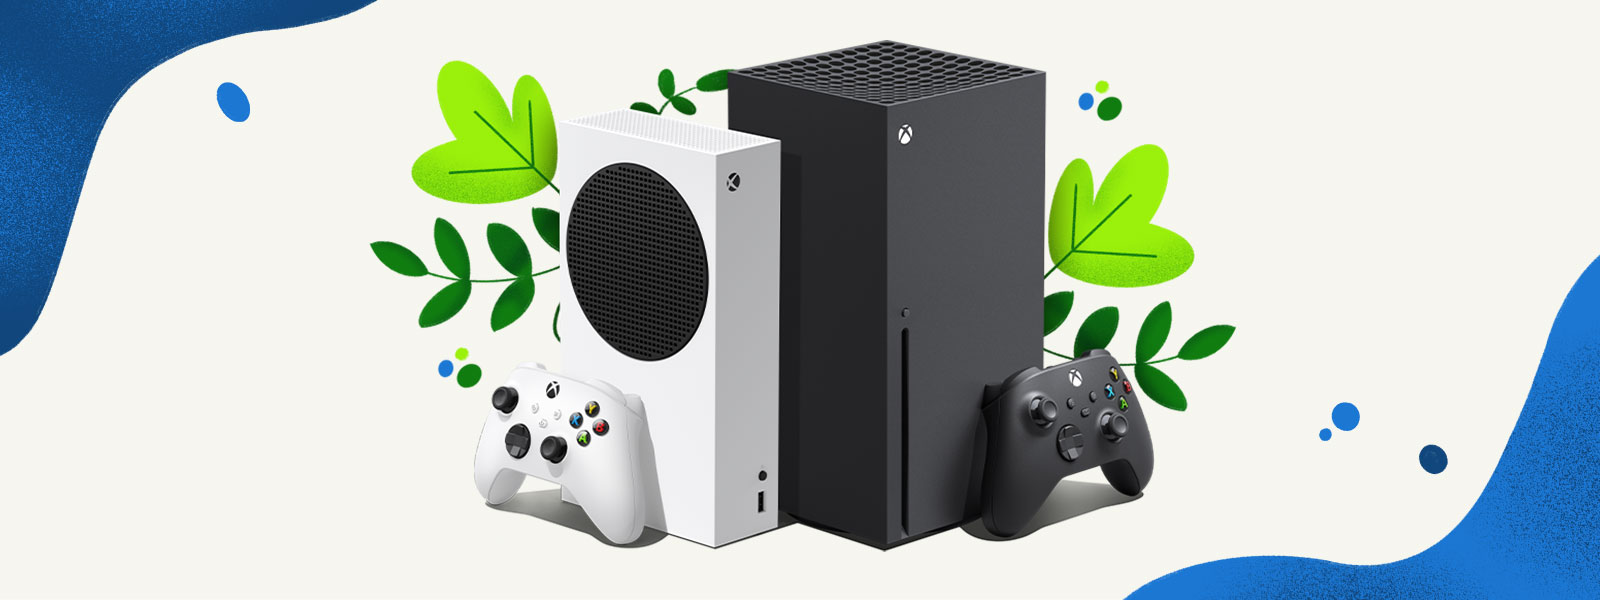 Xbox Series X 和 Xbox Series S 主机并排放置在由植物和蓝色水花组成的装饰背景前。